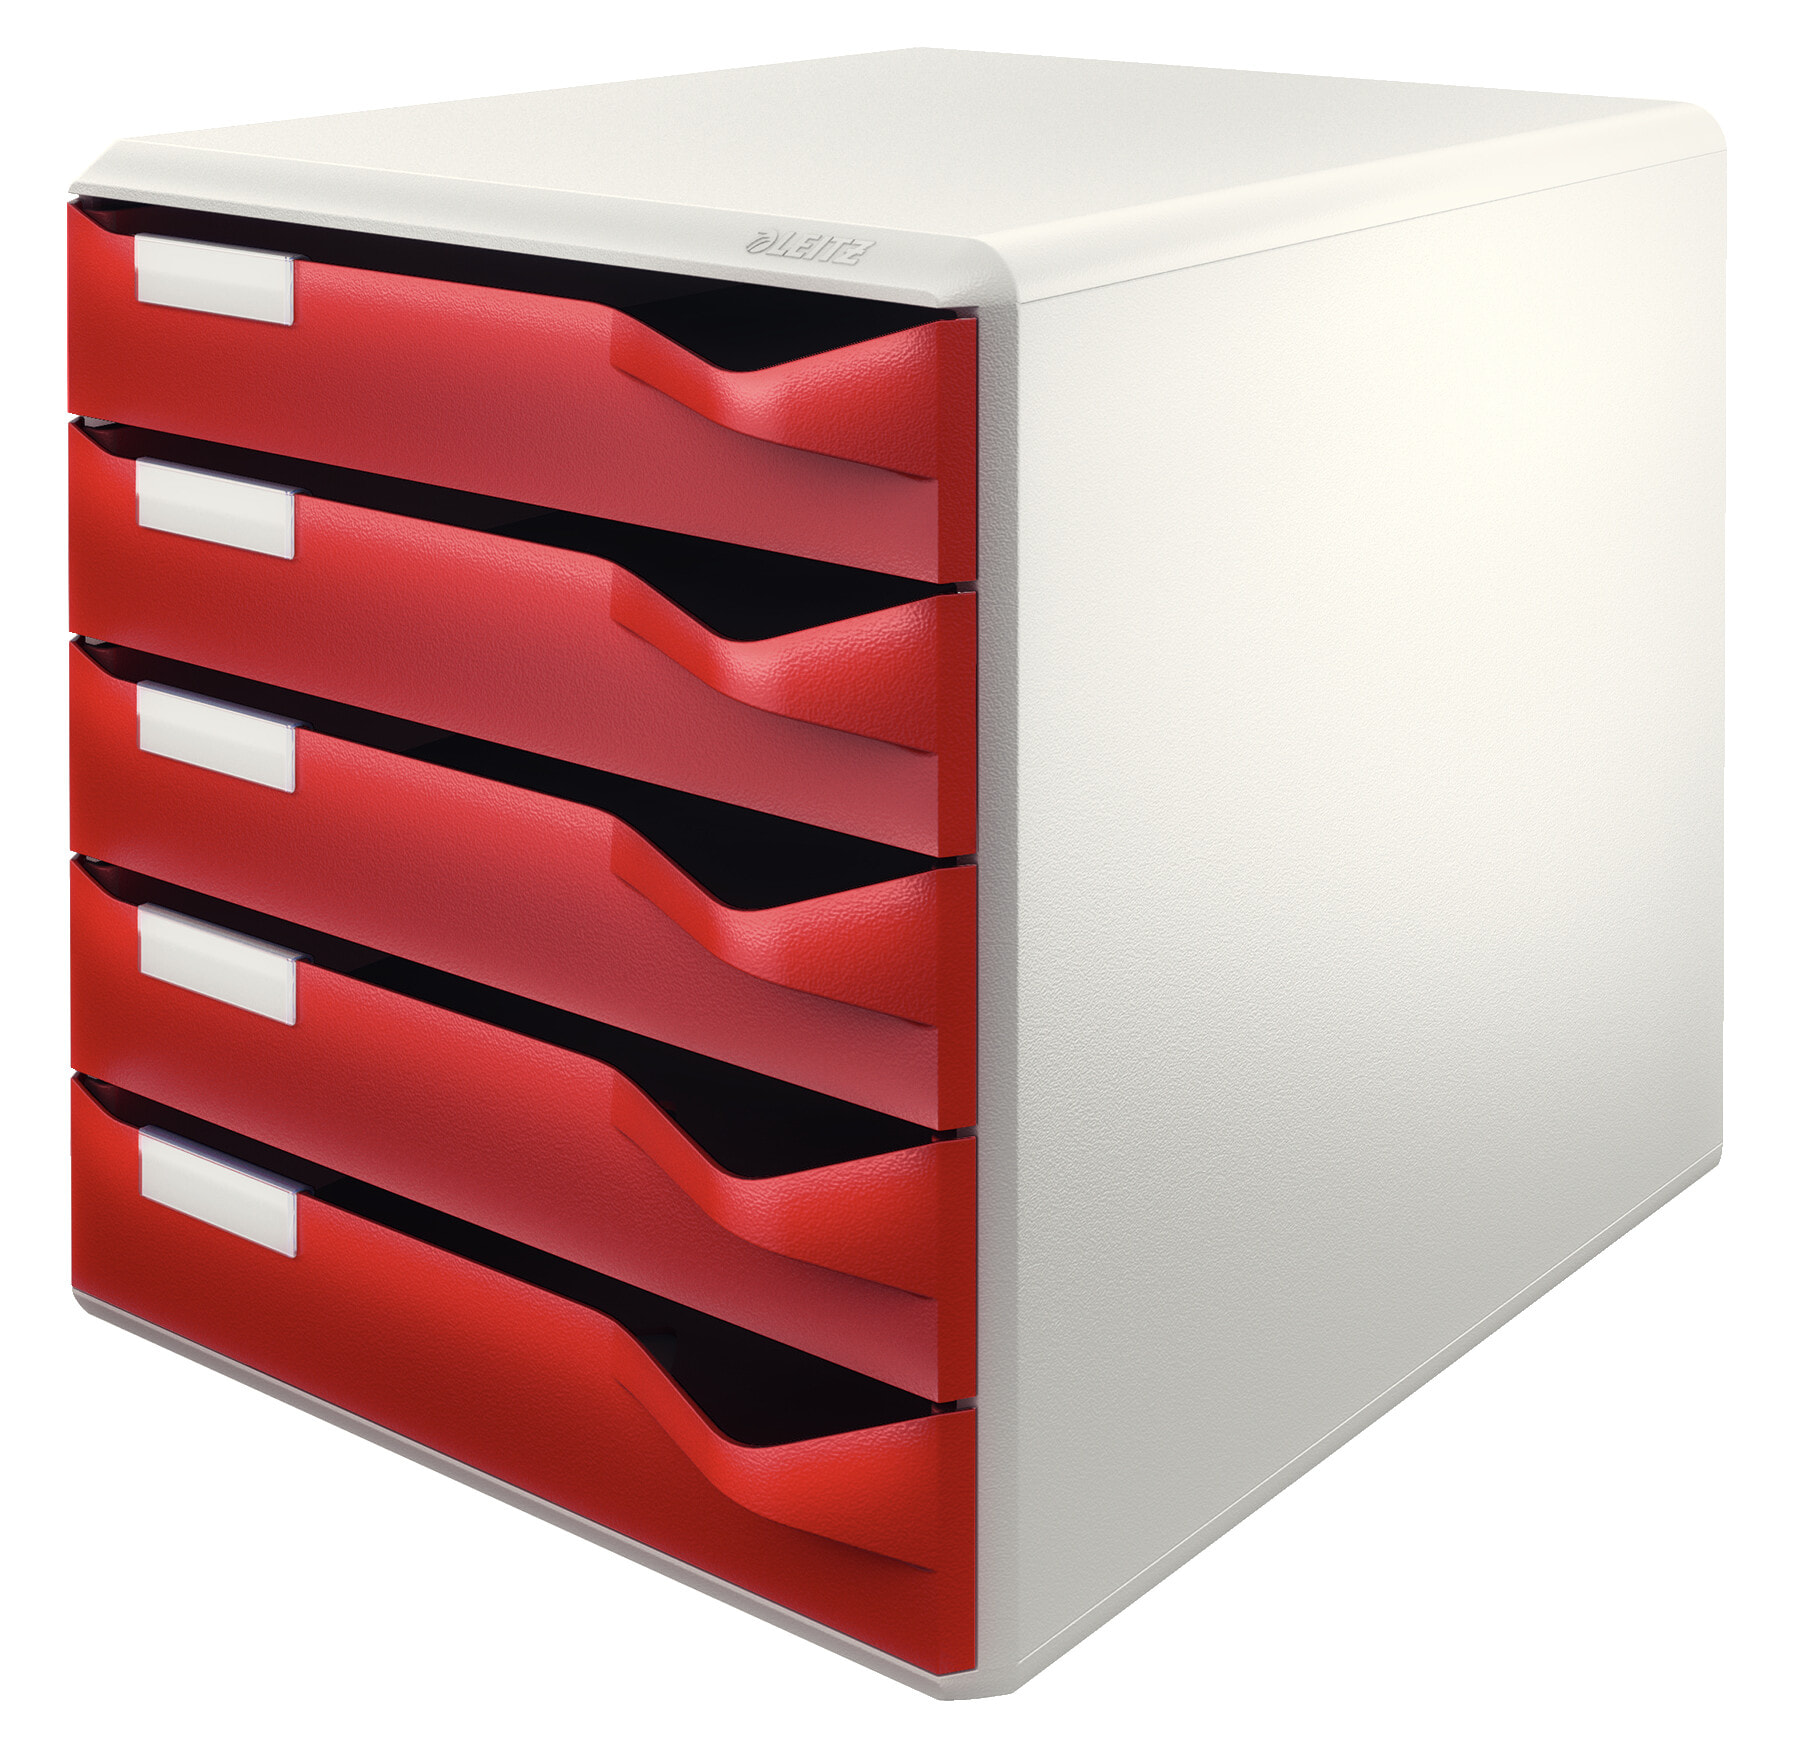 Leitz 52800028 файловая коробка/архивный органайзер Полистрол Бордо, Серый